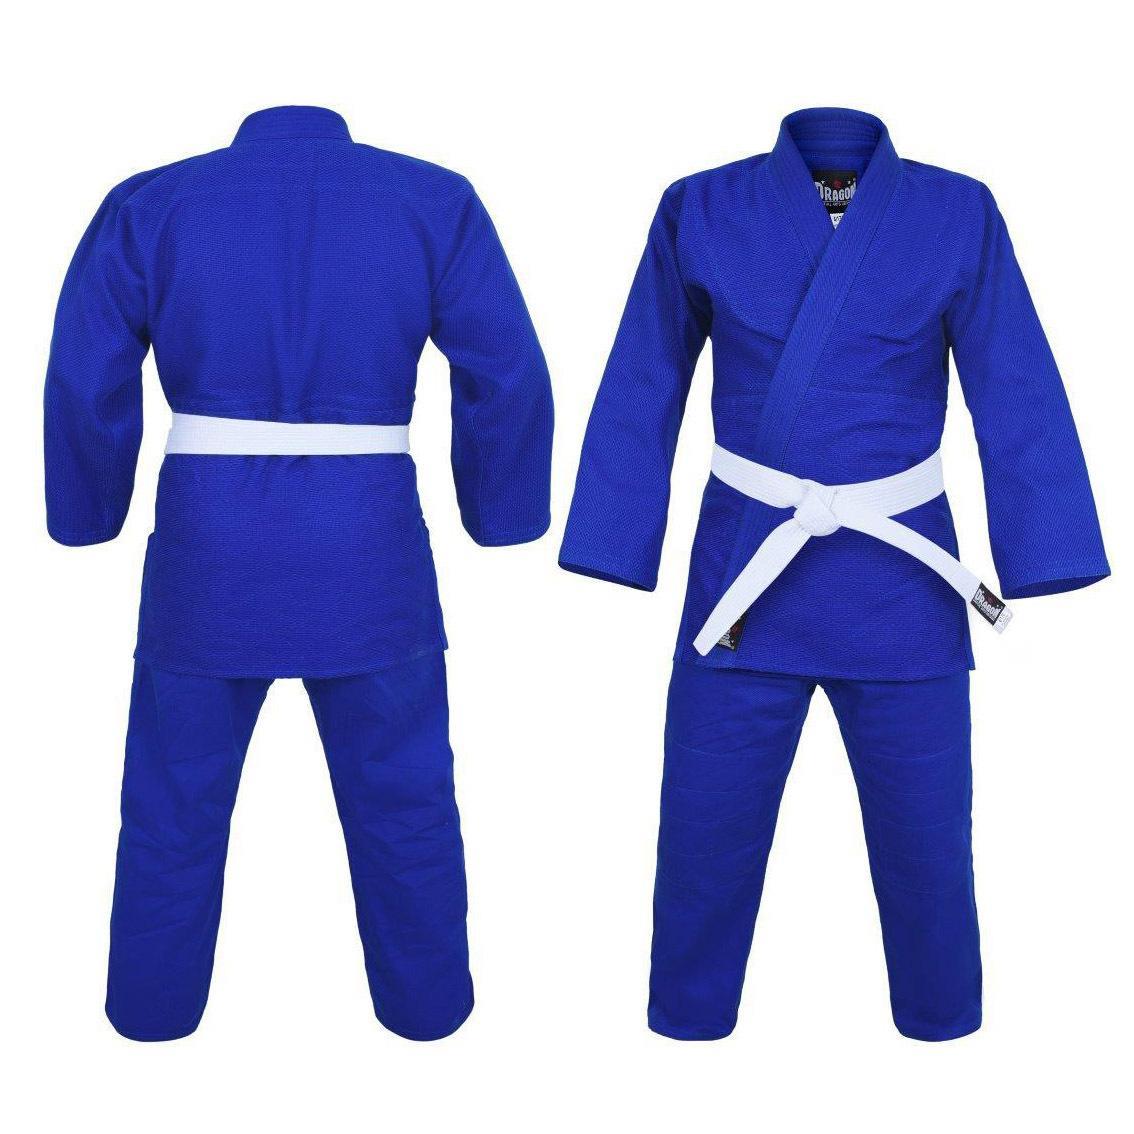 Morgan Sports Dragon Judo Uniform Gi - 1.5 Weave 550gsm - Kids & Adults Sizes